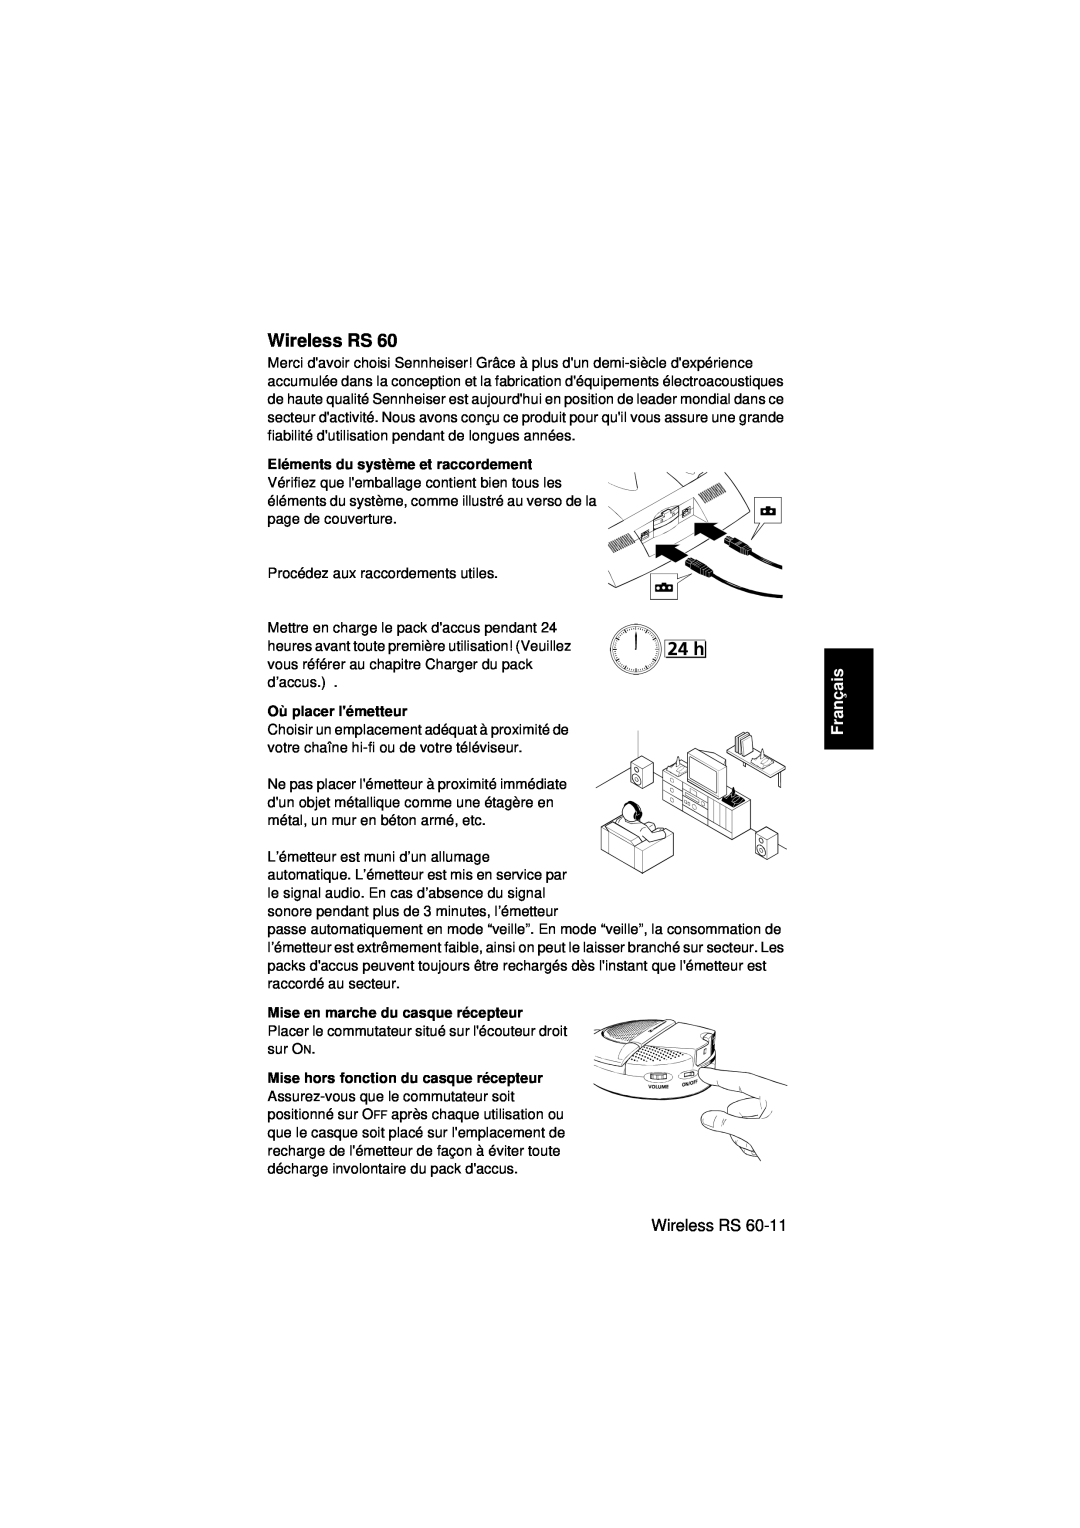 Sennheiser Wireless RS 60 instruction manual Français, Eléments du système et raccordement, Où placer lémetteur 